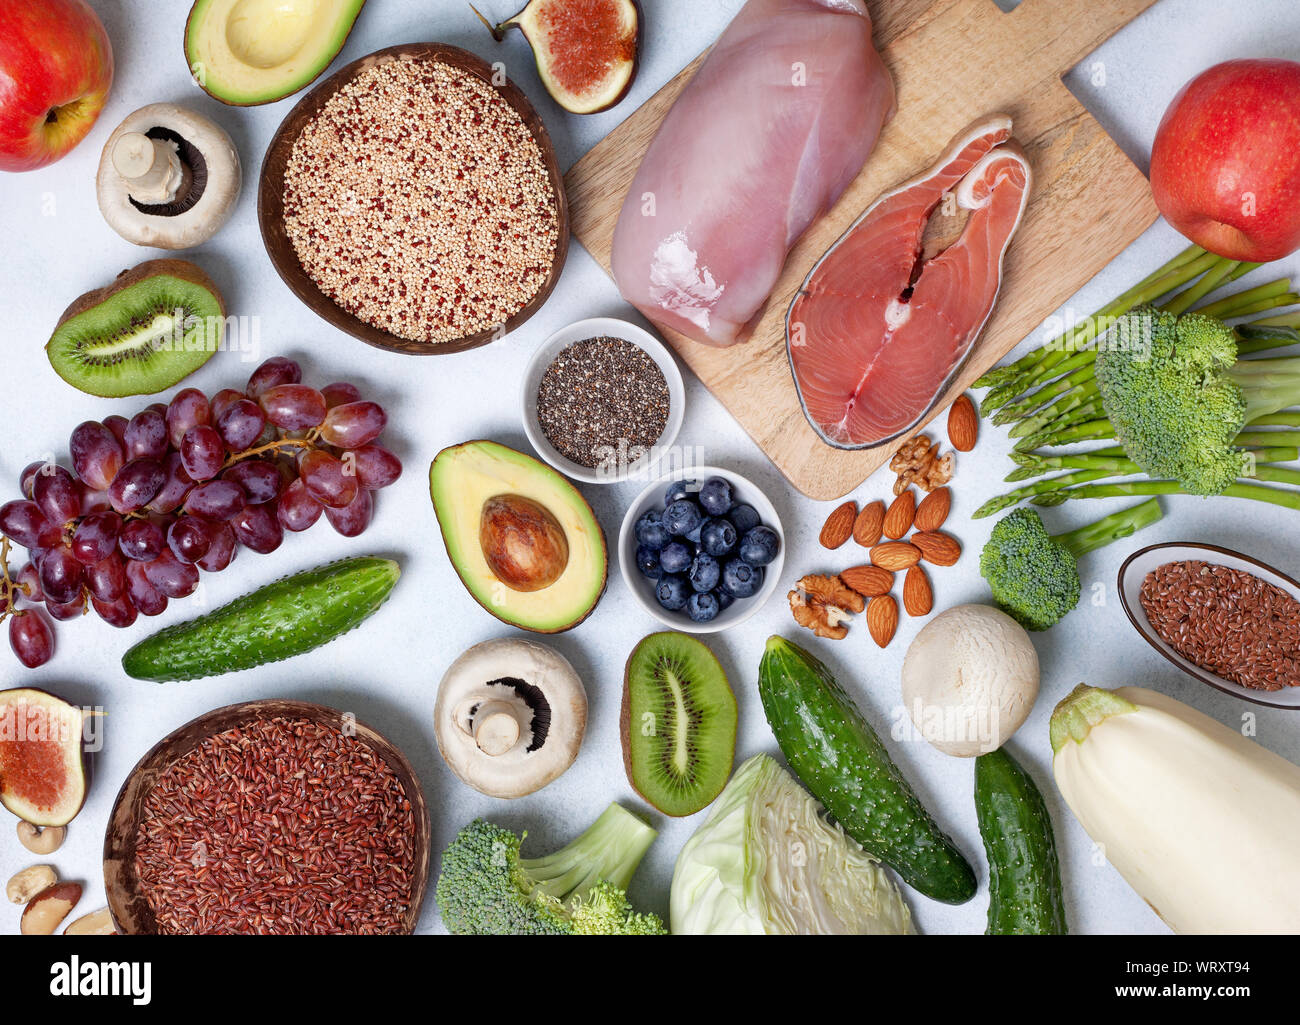 Moda DIETA dieta pegan pegan. Productos : carnes, pescados, cereales, legumbres, frutos secos y bayas. vista desde arriba Foto de stock